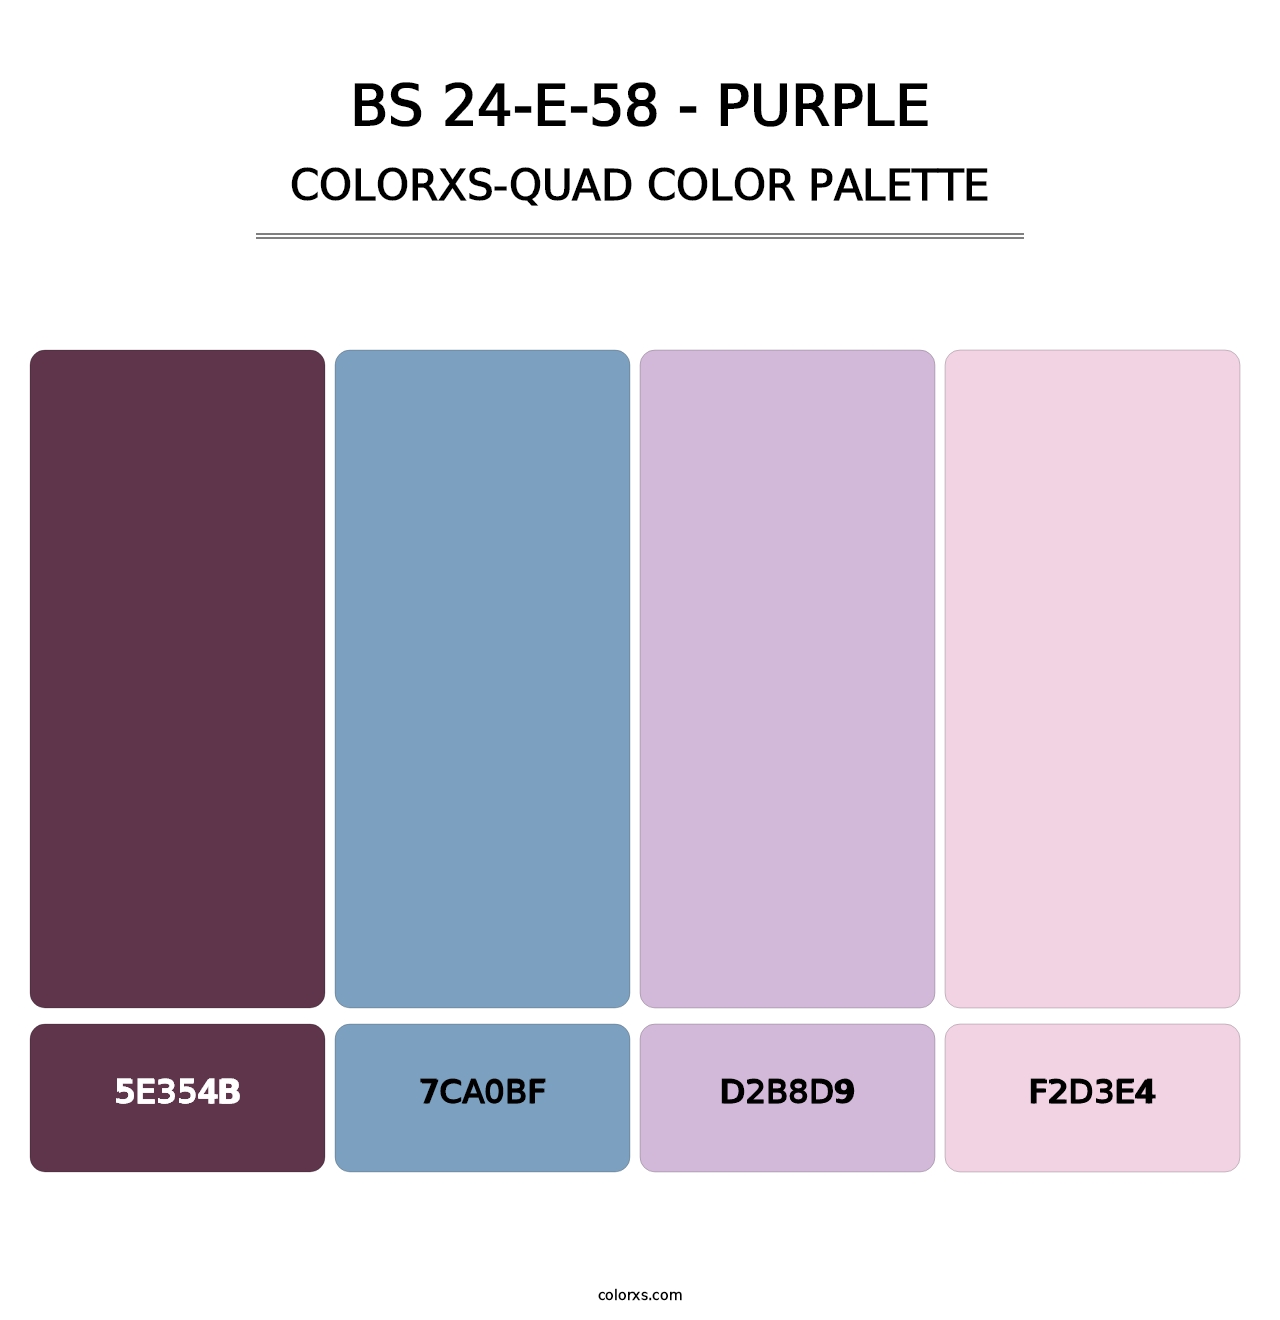 BS 24-E-58 - Purple - Colorxs Quad Palette